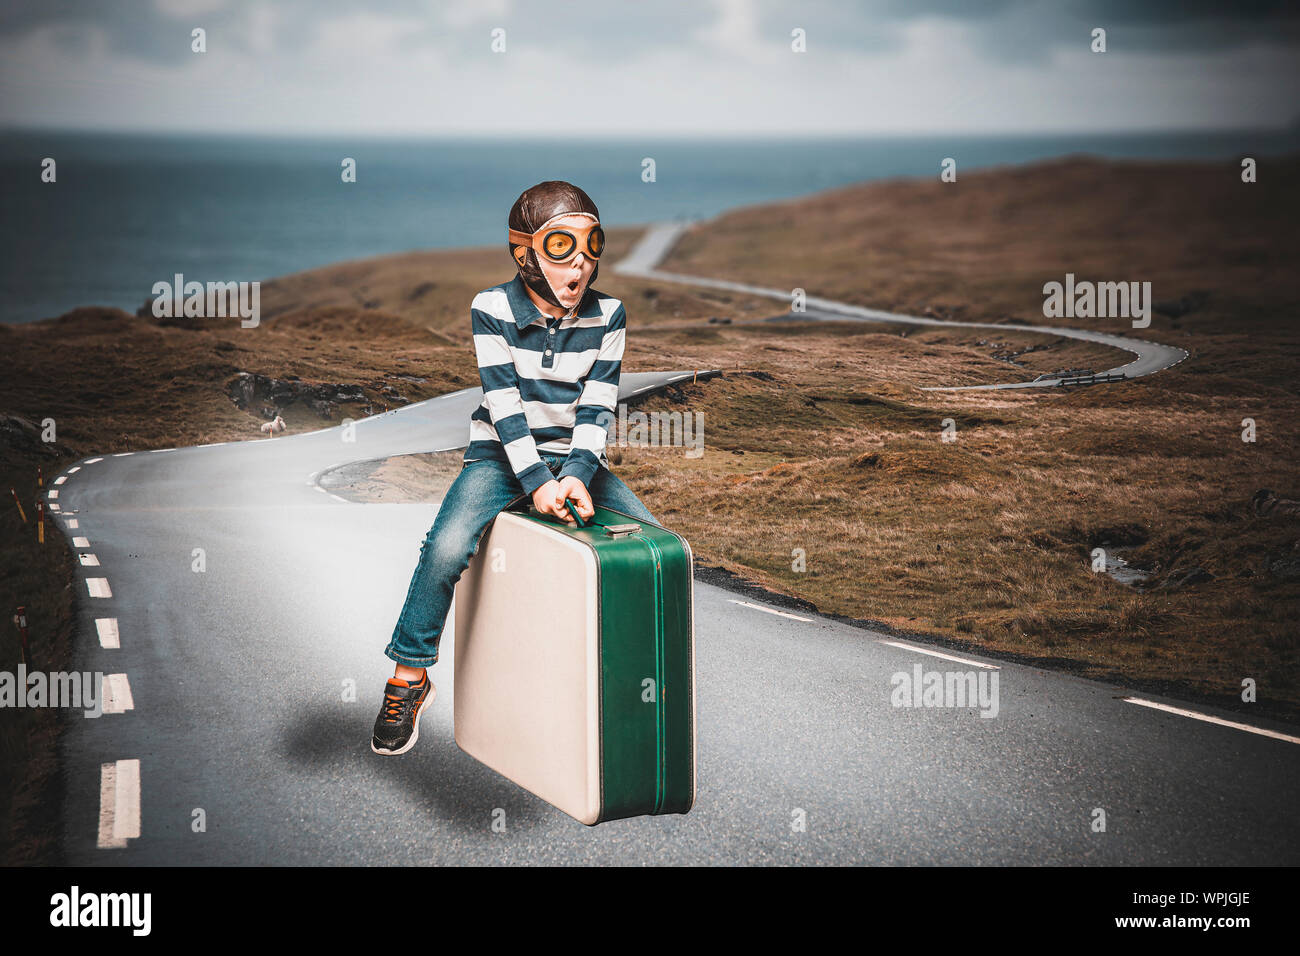 Niño vestido como aviador en una maleta imagina a vivir una aventura de volar en una ruta perdida Foto de stock